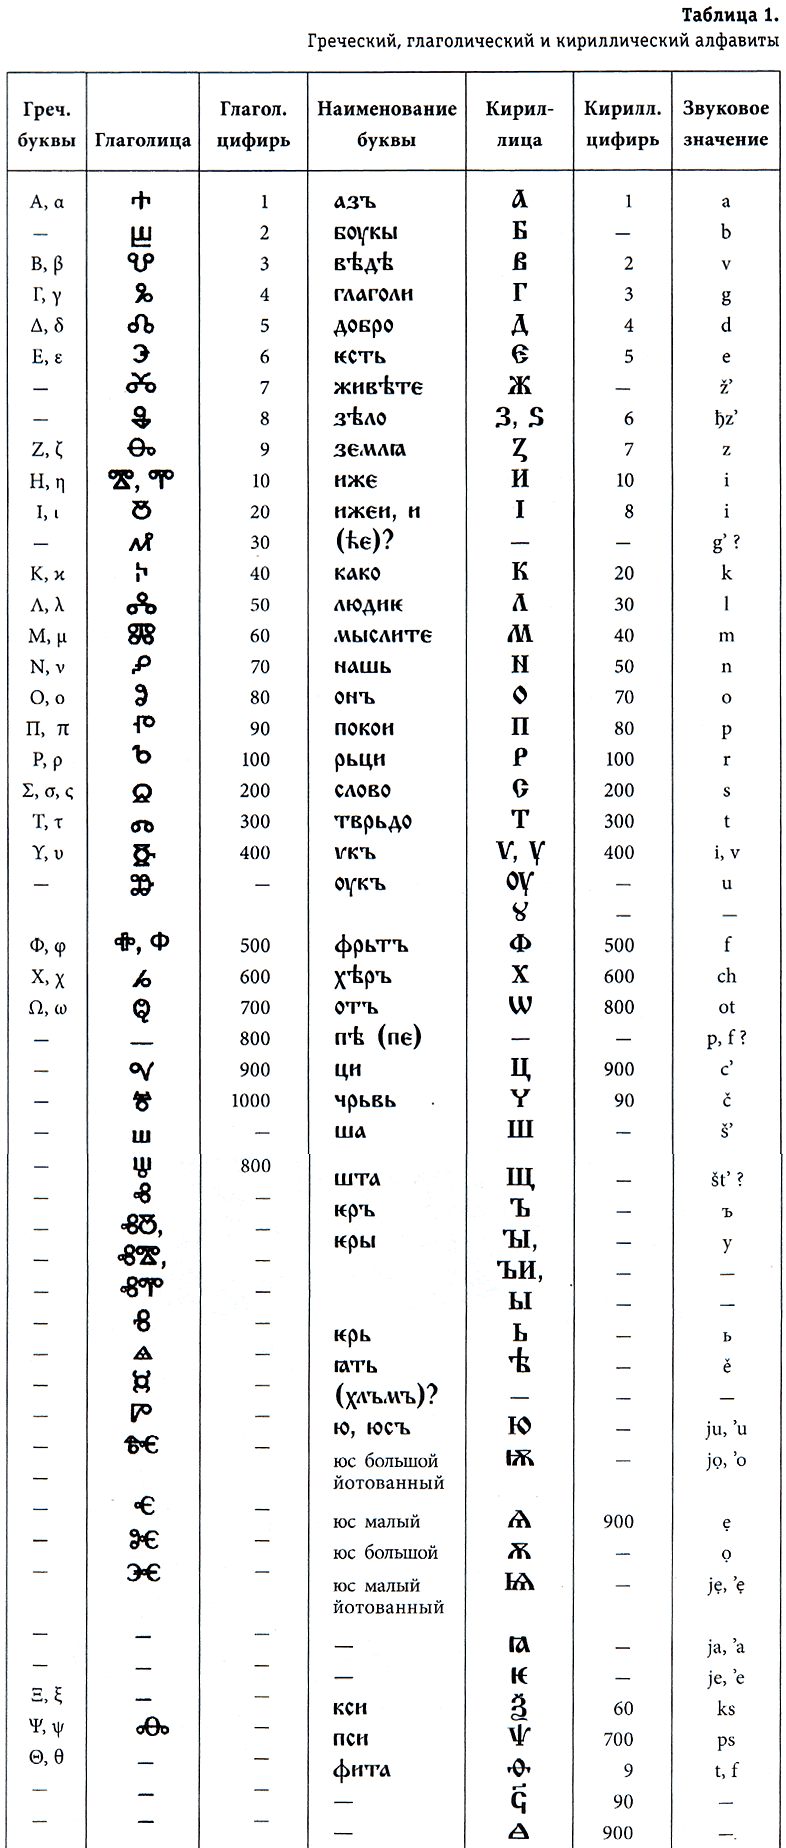 Греческий, глаголический и кириллический алфавиты (таблица)